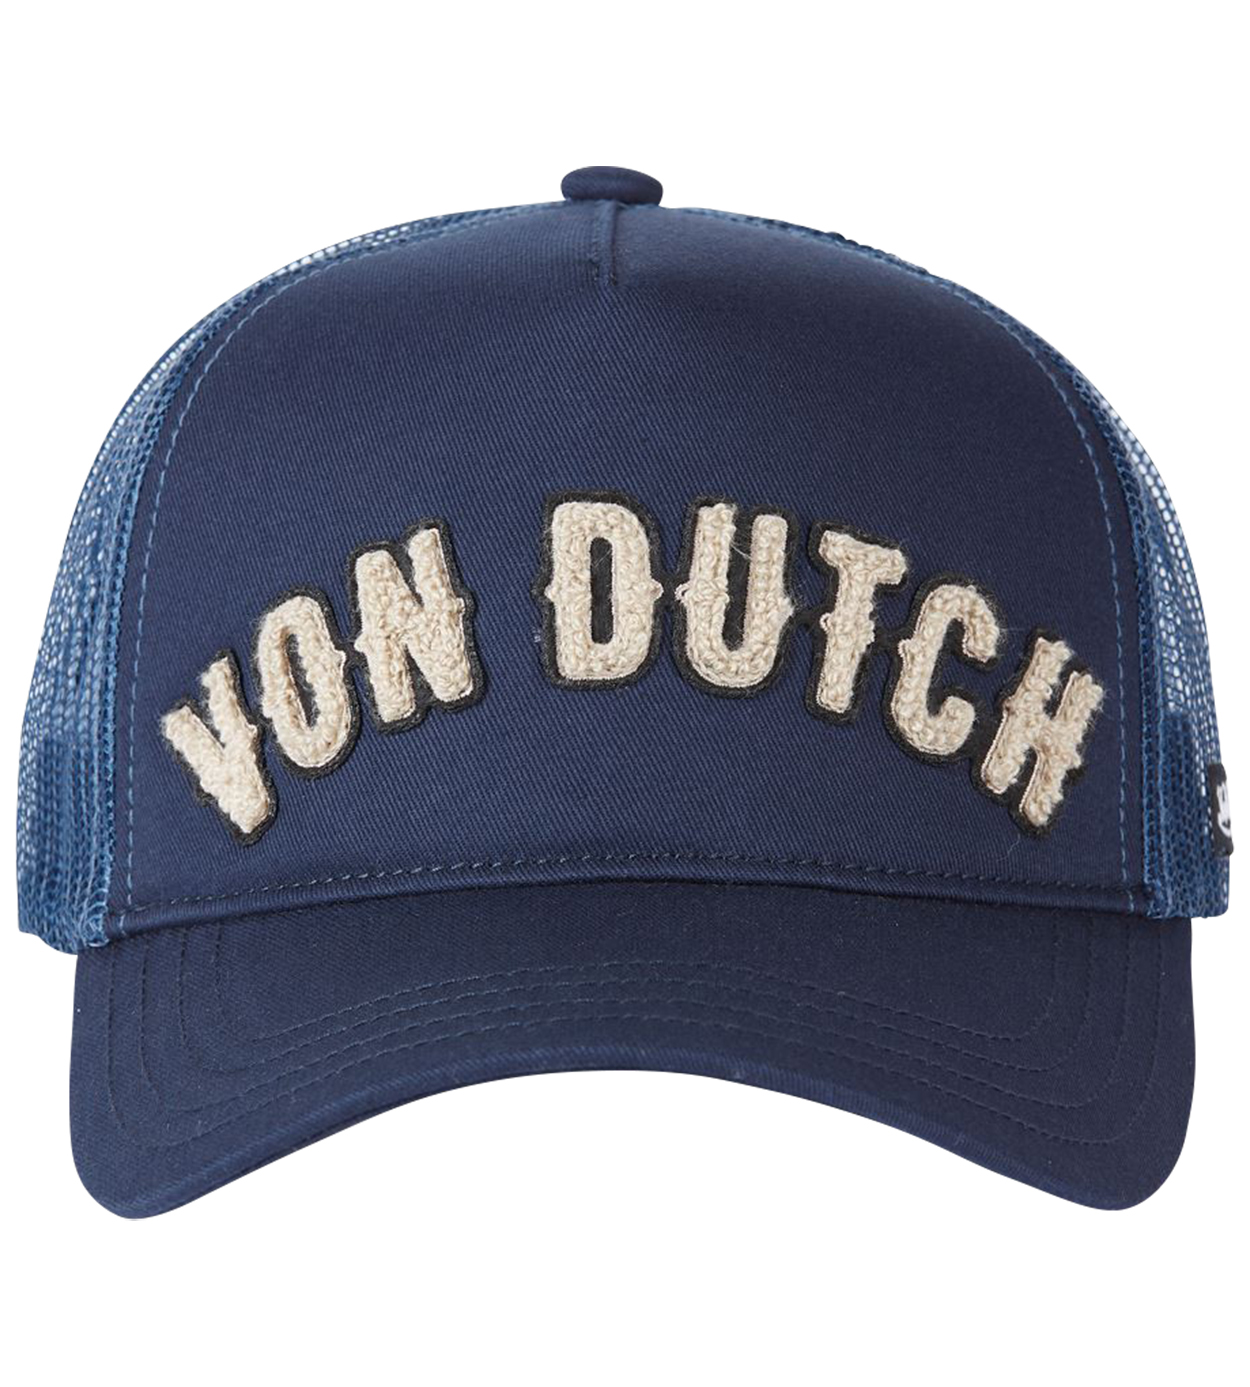 casquette von dutch bleu marine bi-matière avec nom de la marque brodé en relief beige à l'avant